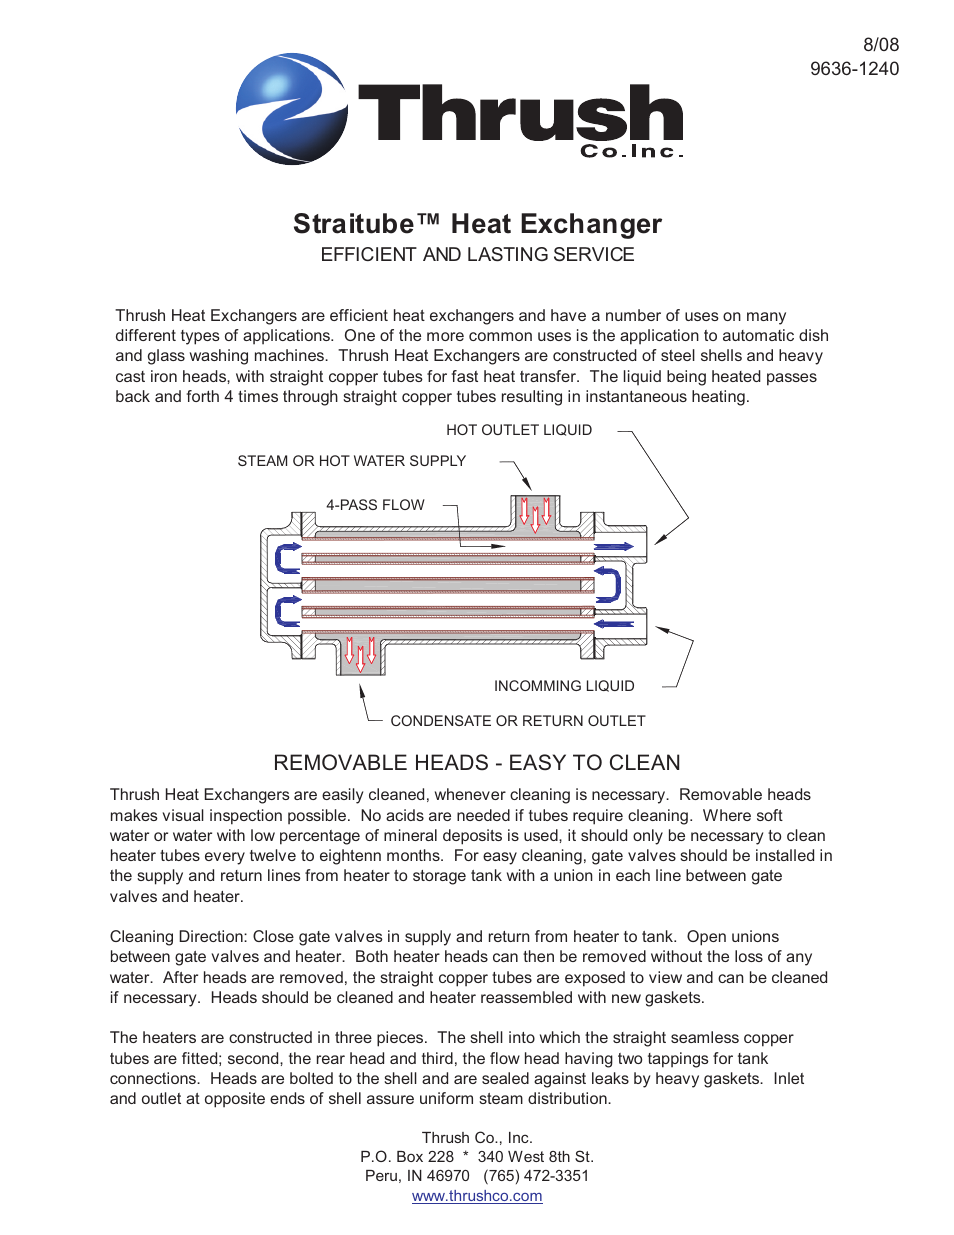 Standard Straitube Heat Exchangers